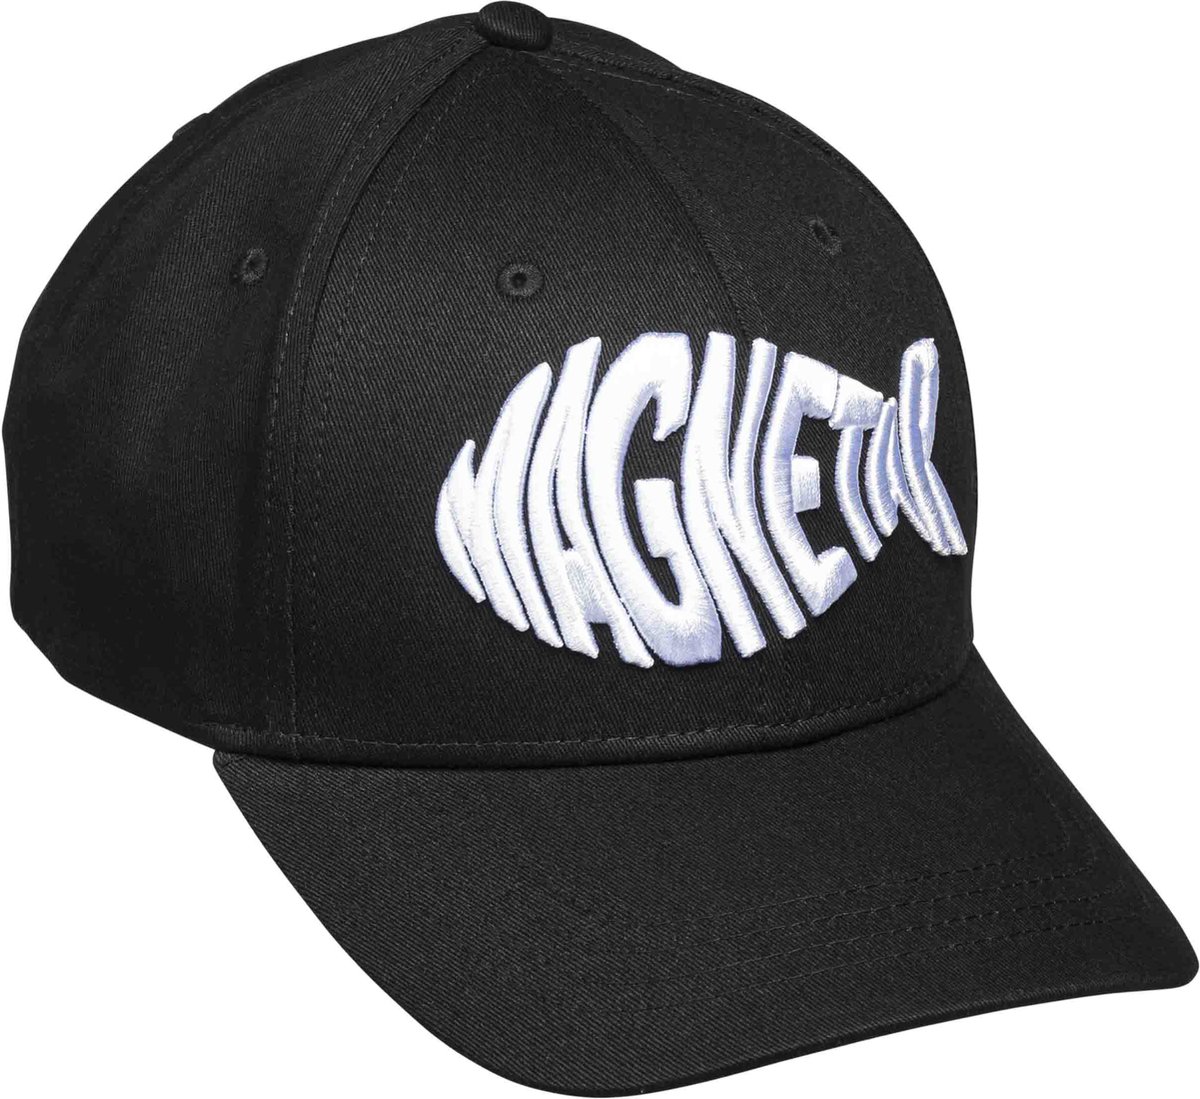 Magnetar Baseball Cap - Zwart - Met geborduurde logo